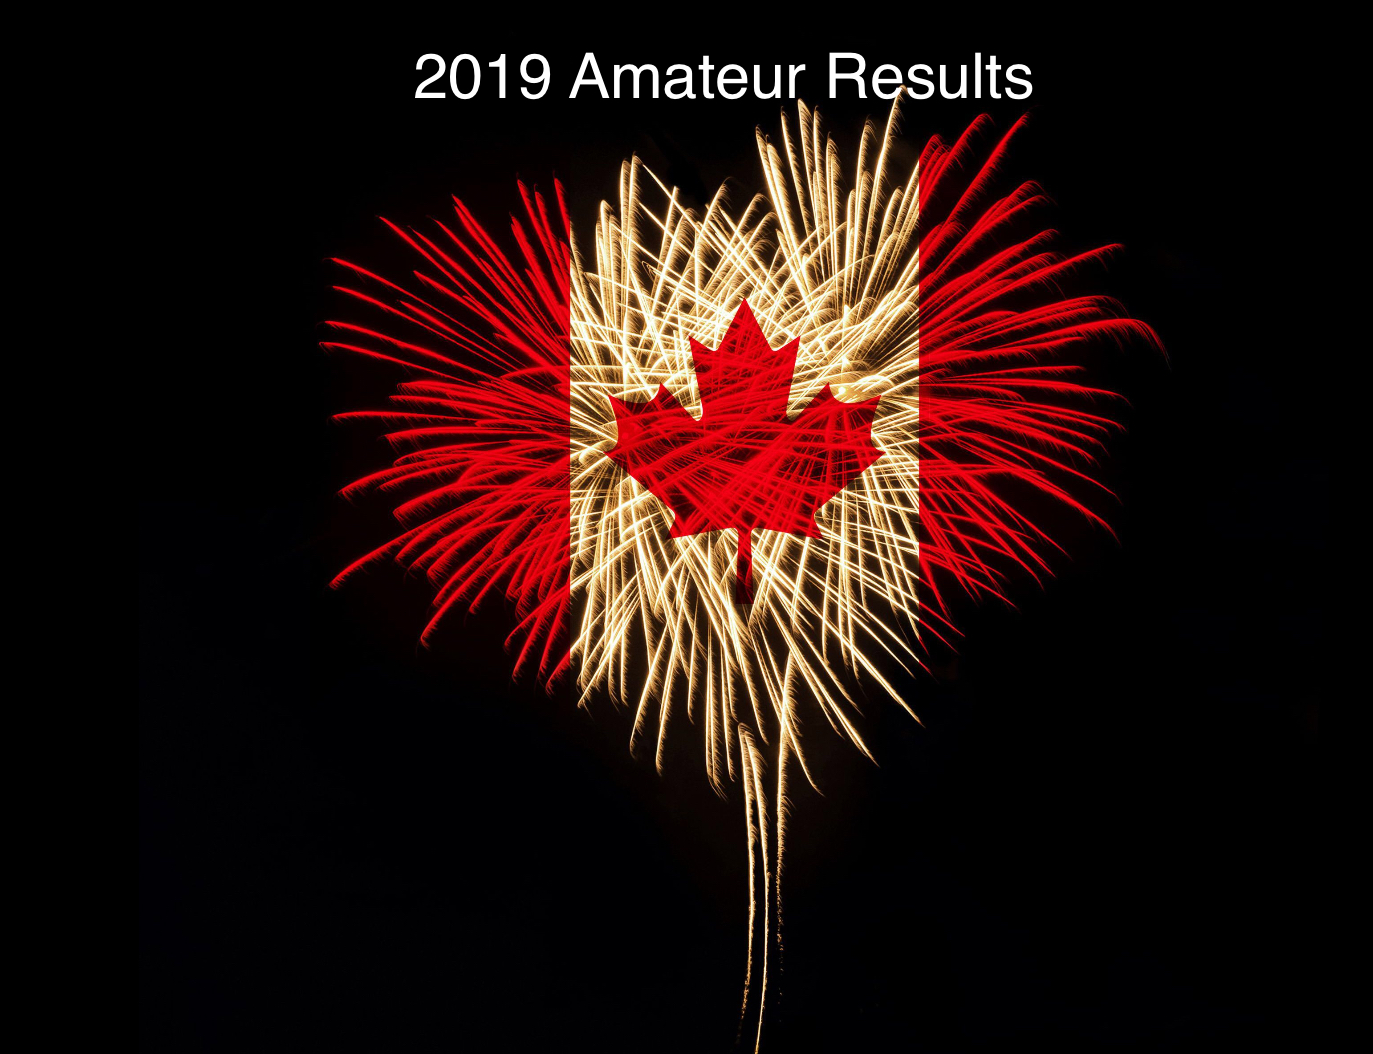 Championnats Canadien 2019 Résultats Amateur